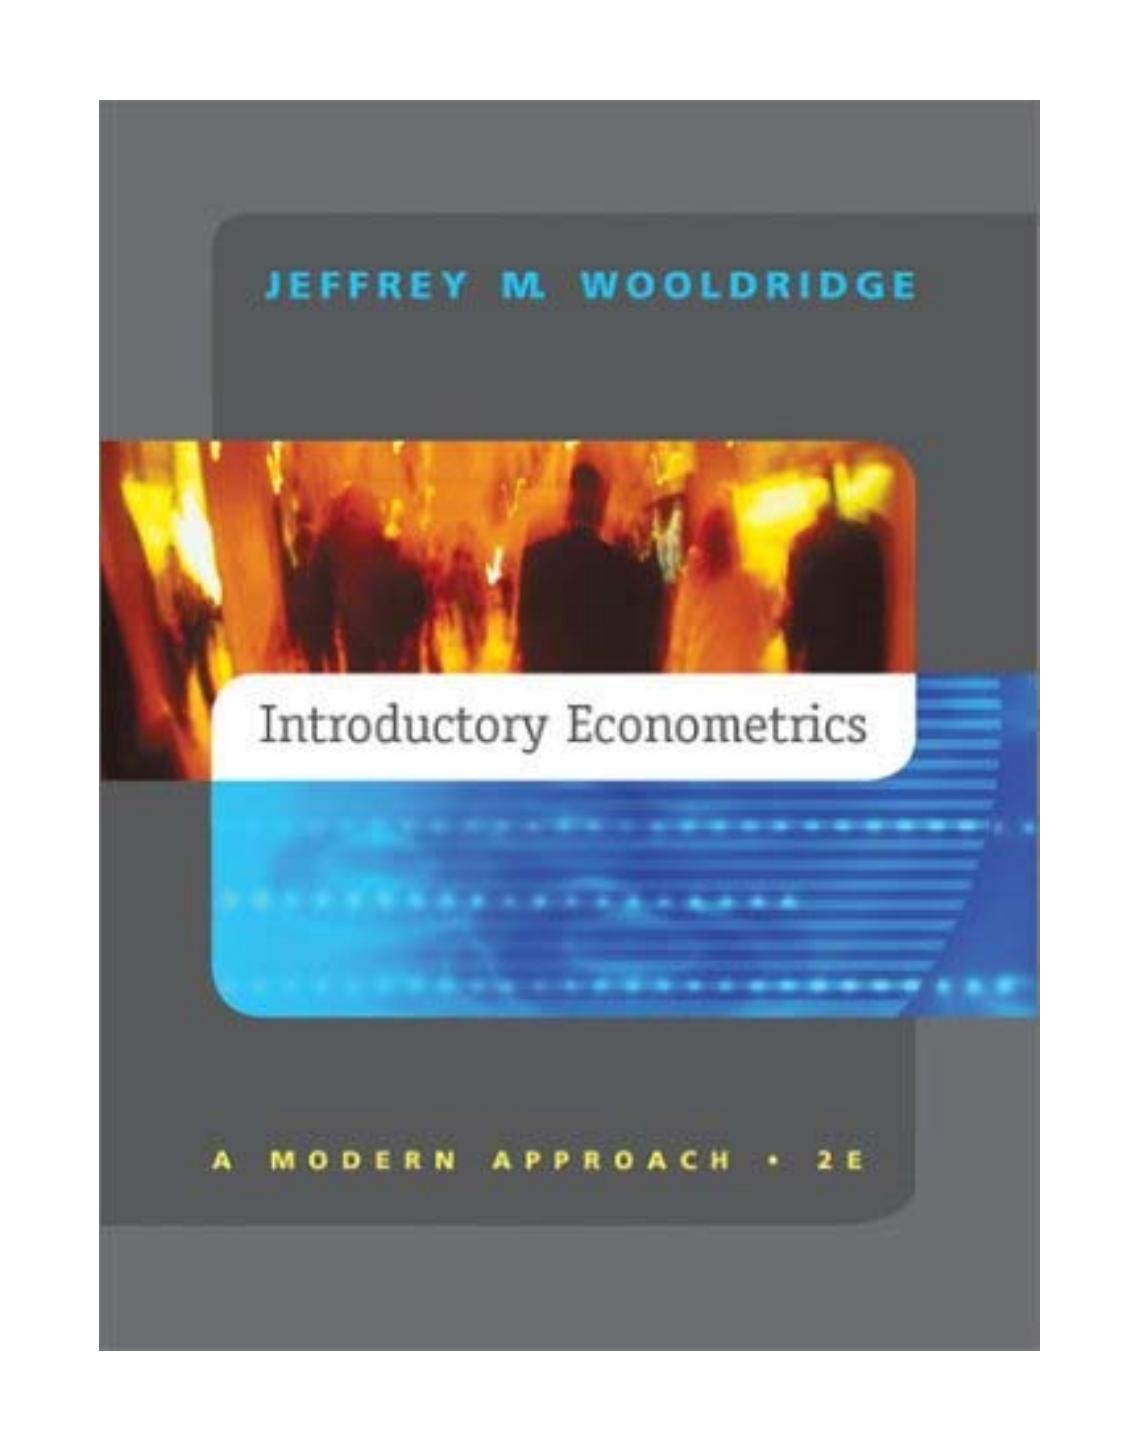 Wooldridge, Jeffrey (2004) - Introductory Econometrics